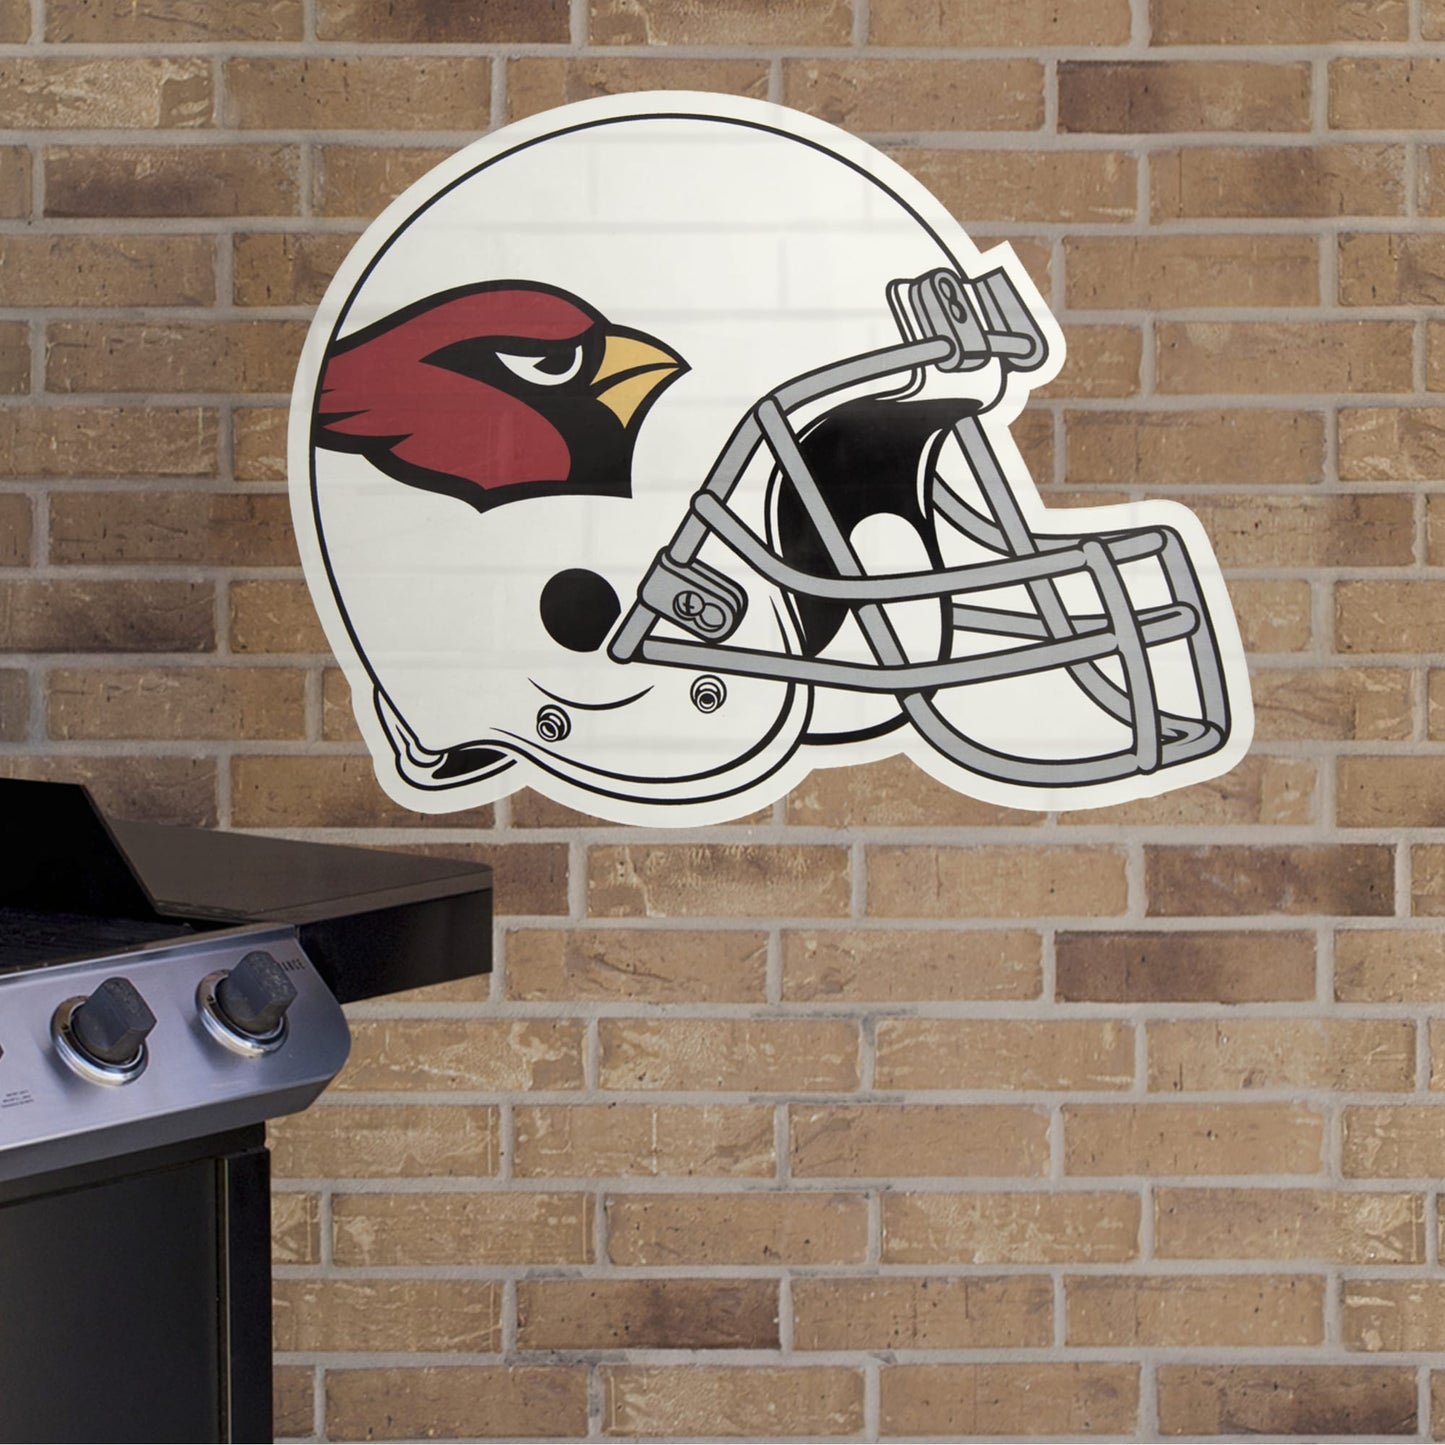 Arizona Cardinals: 2022 Outdoor Helmet - Officially Licensed NFL Outdoor  Graphic